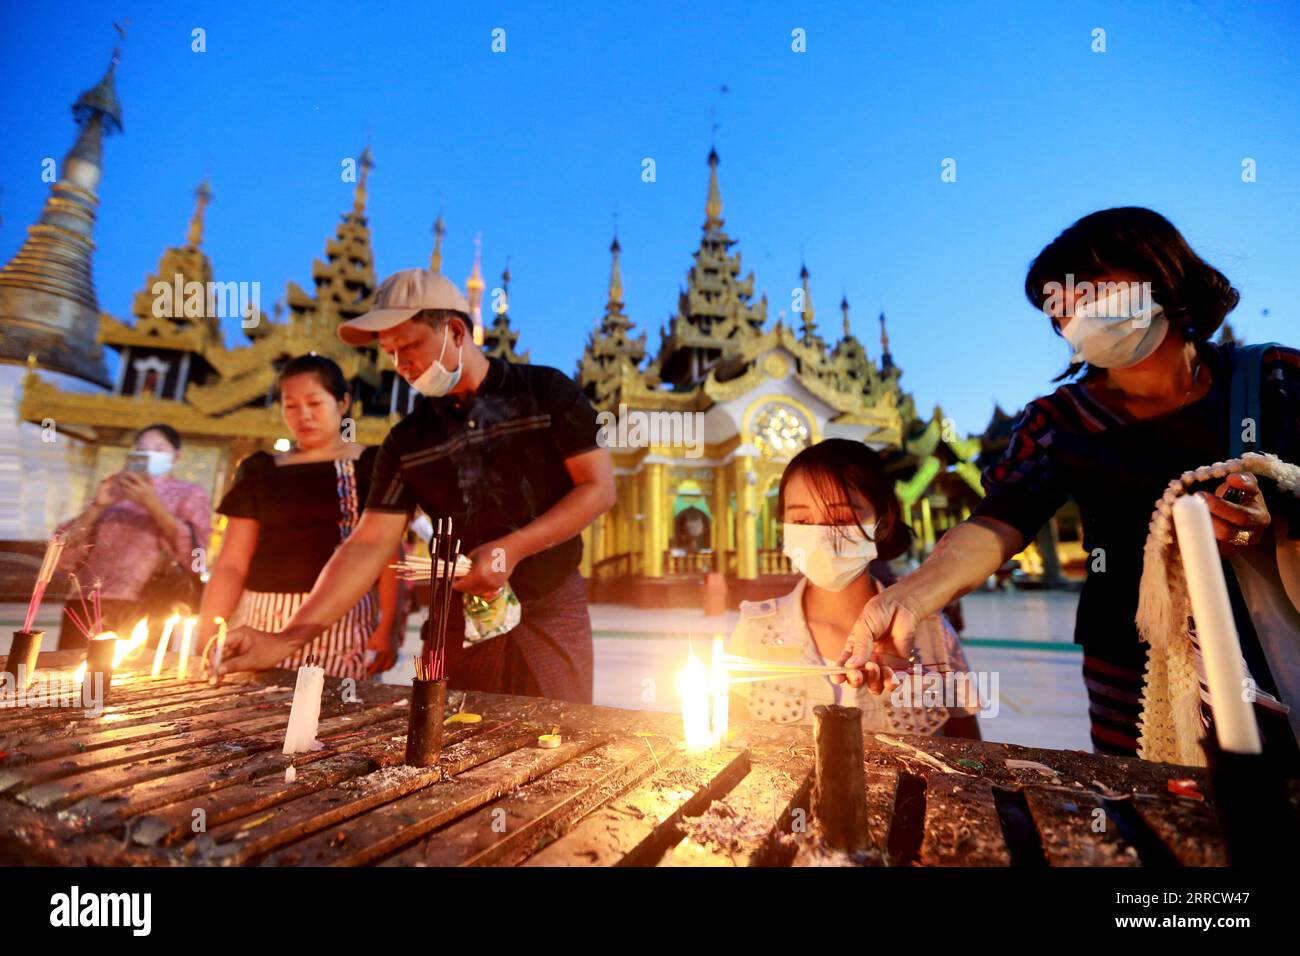 211118 -- YANGON, 18. November 2021 -- Menschen zünden Kerzen während des traditionellen Tazaungdaing Festivals in der Shwedagon Pagode in Yangon, Myanmar, 18. November 2021. Das Tazaungdaing Festival, auch als Festival der Lichter bekannt, fällt in den achten Monat des traditionellen Myanmar-Kalenders. Es wird als Nationalfeiertag in Myanmar gefeiert. MYANMAR-YANGON-TRADITIONAL TAZAUNGDAING FESTIVAL UxAung PUBLICATIONxNOTxINxCHN Stockfoto